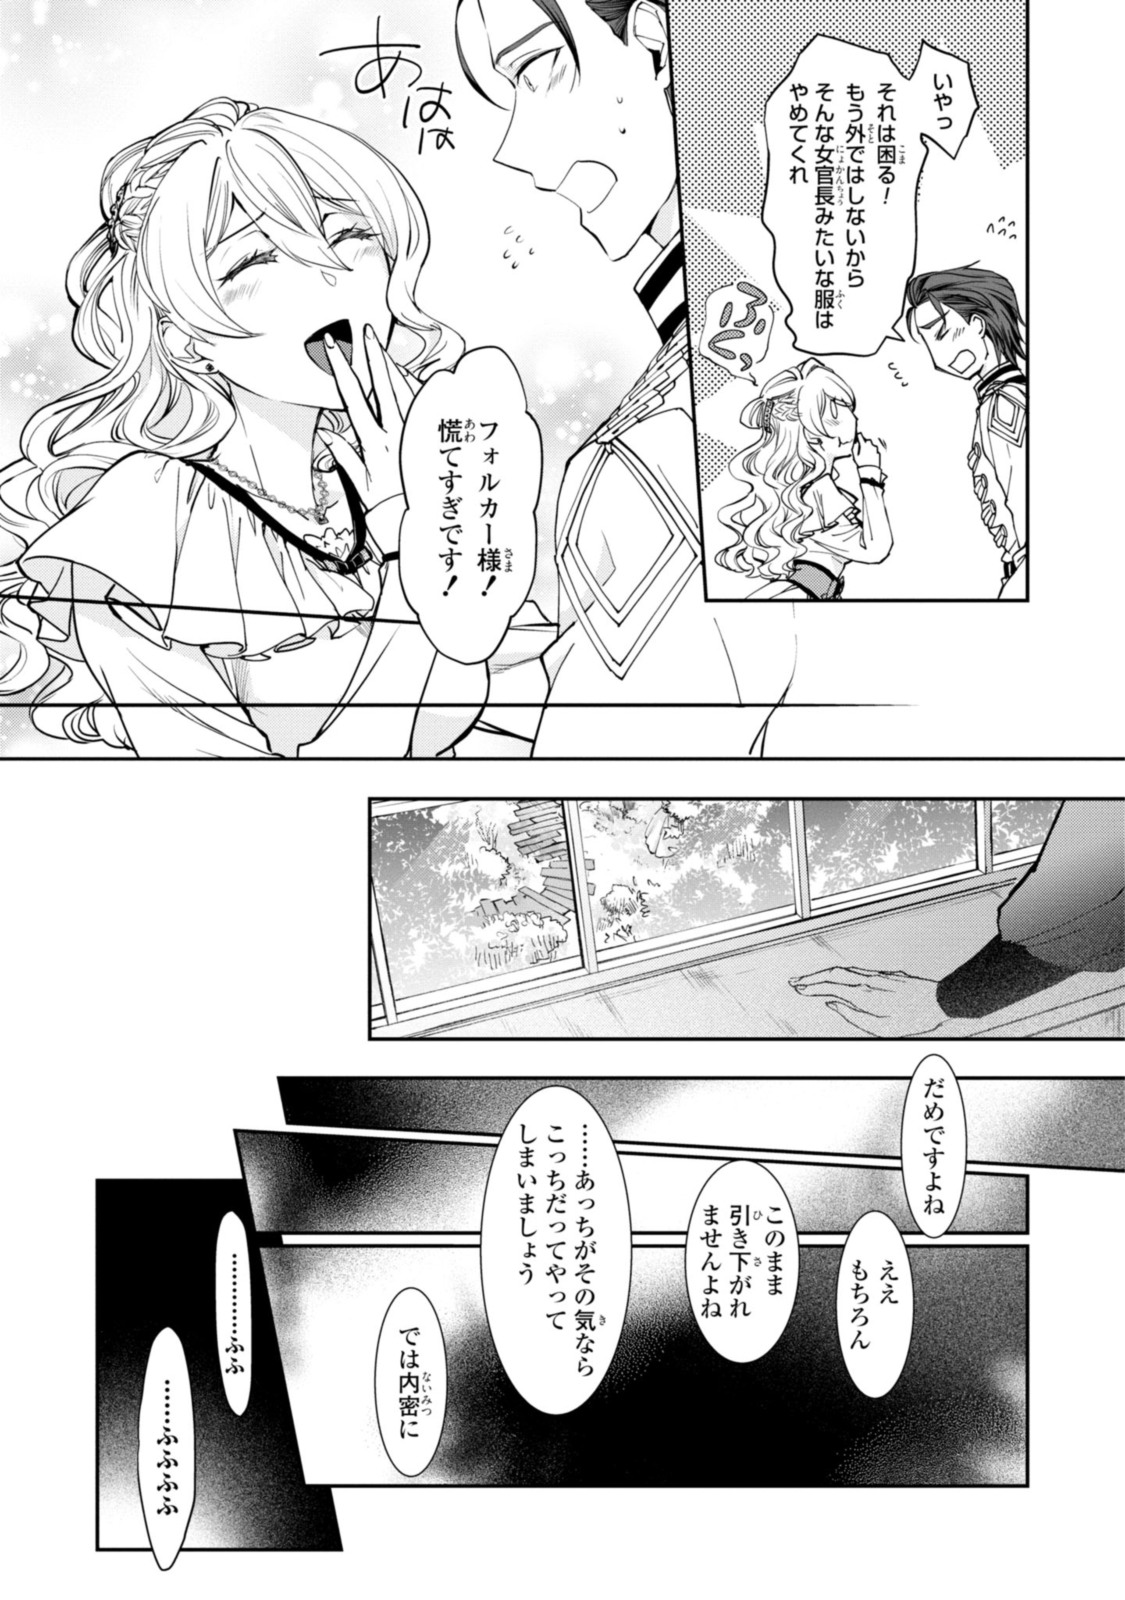 Sakkon no Cinderella wa Kutsu wo Otosanai. - Chapter 9.2 - Page 1